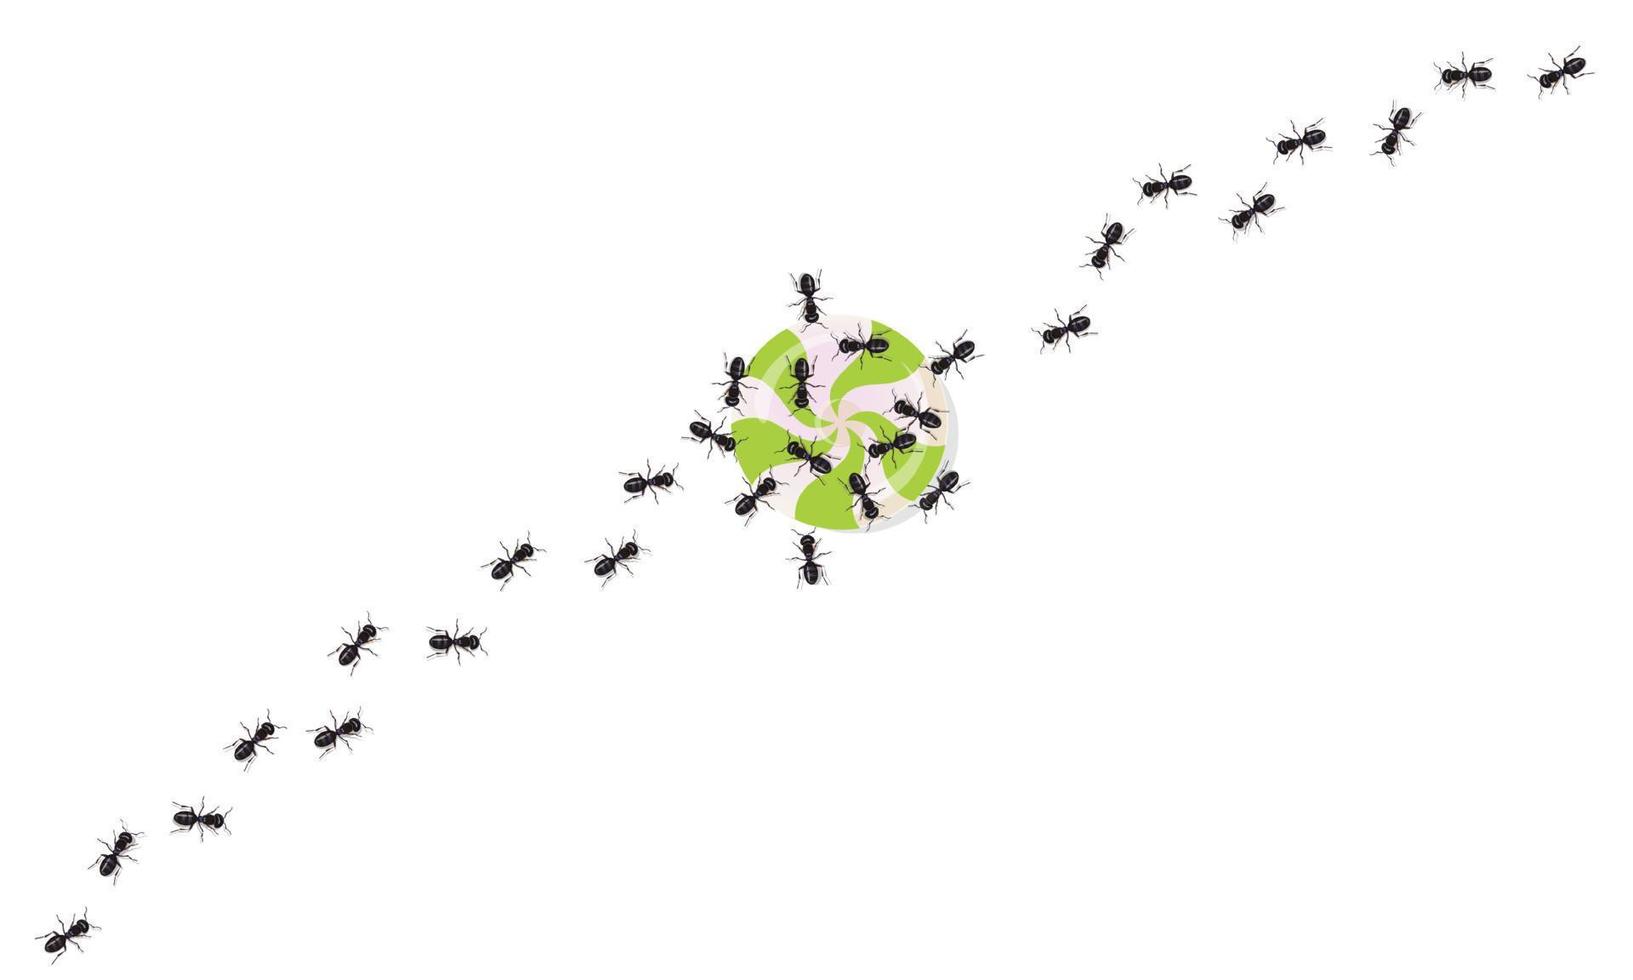 las hormigas negras realistas rastrean los dulces que atacan. insectos marchando en línea ondulada. vector